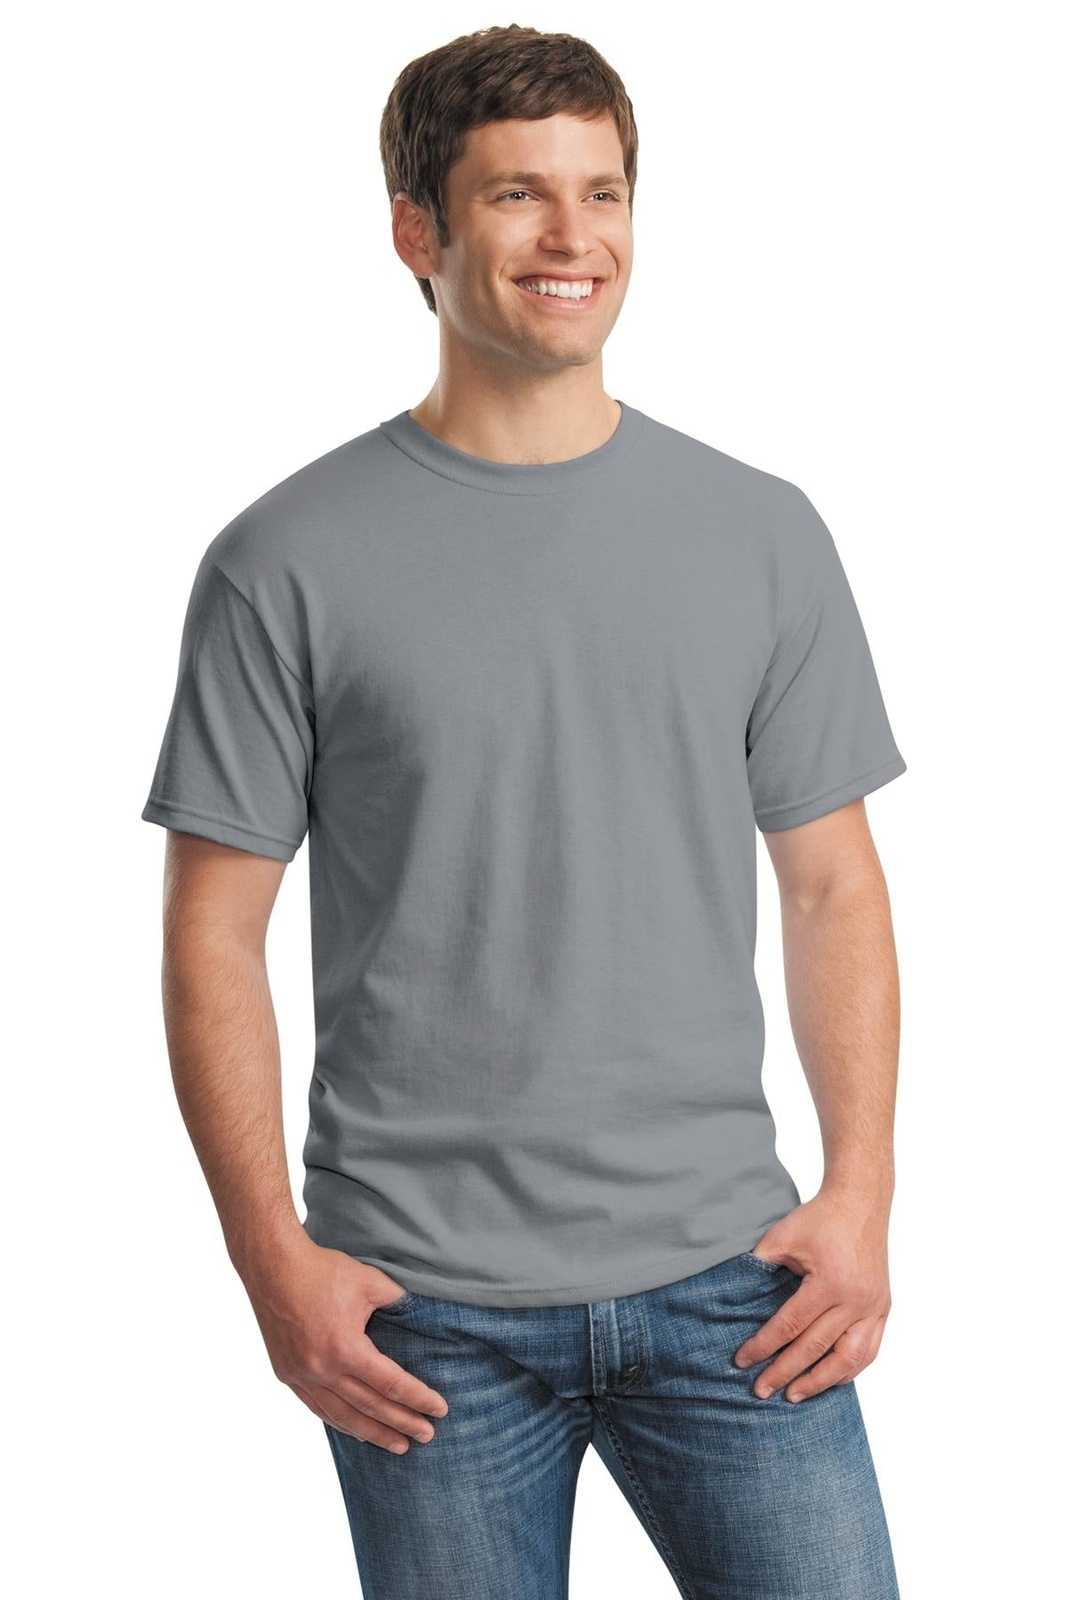 Gildan 5000 Heavy Cotton 100% Cotton T-Shirt - Gravel - HIT a Double